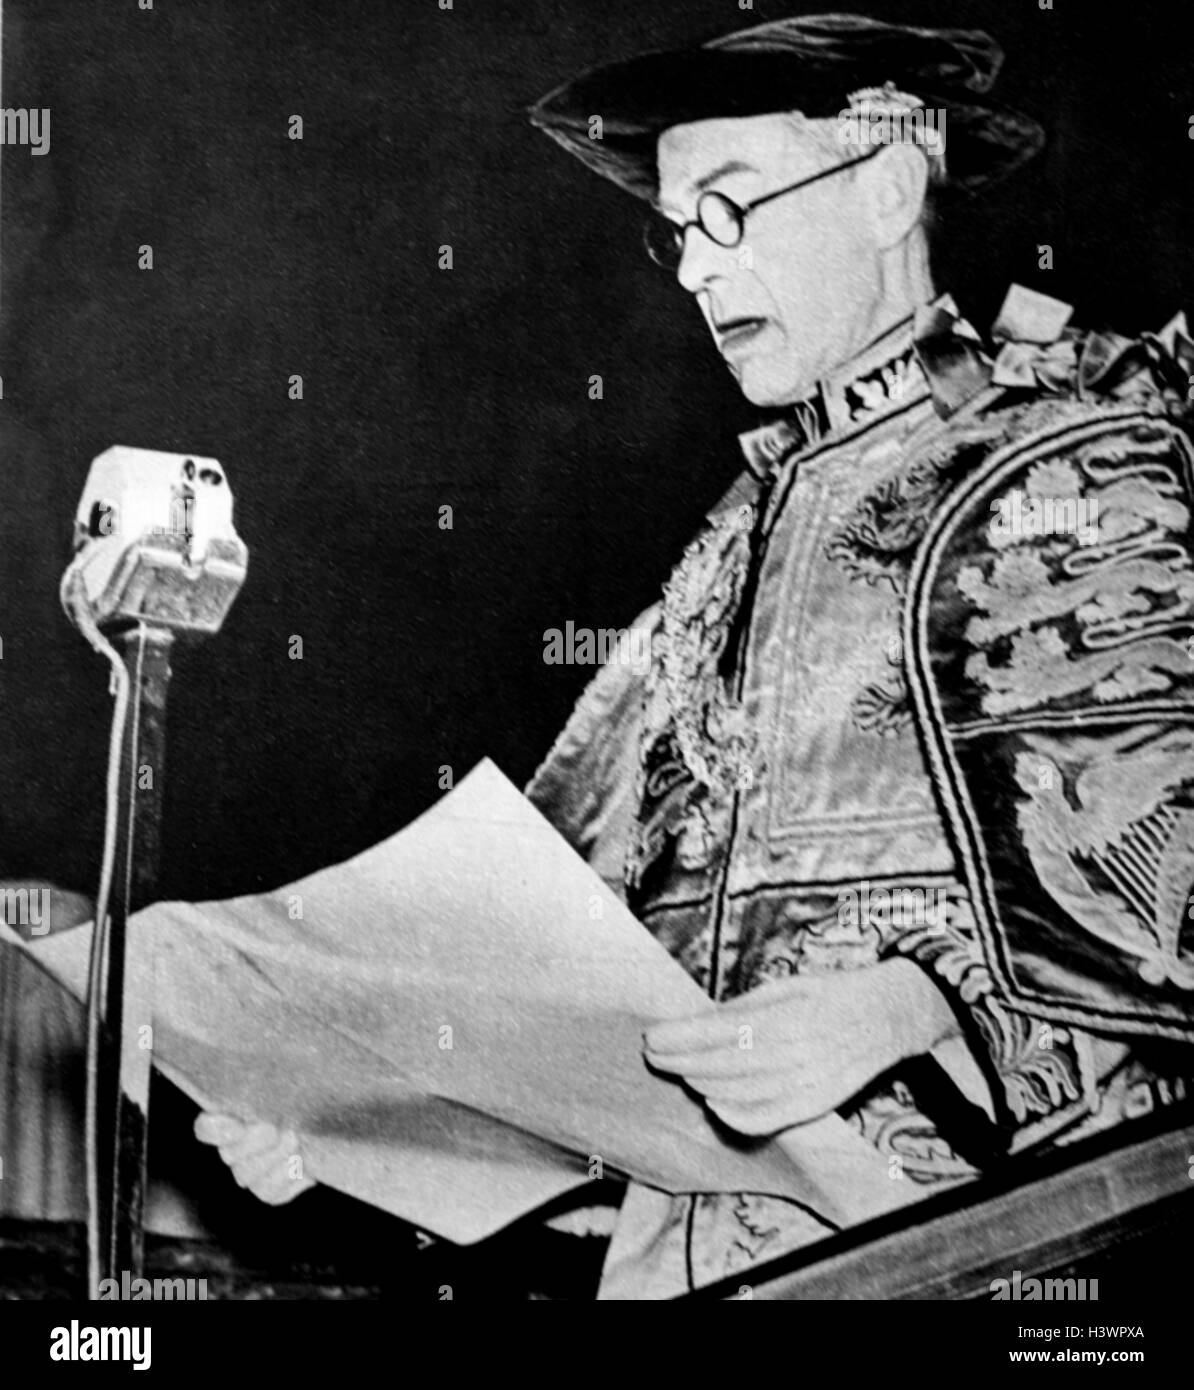 Ankündigung der neuen König, König Edward VIII (1894 - 1972), der König des Vereinigten Königreichs und der Dominions des British Empire, und Kaiser von Indien, bis zu seiner Abdankung. Vom 20. Jahrhundert Stockfoto